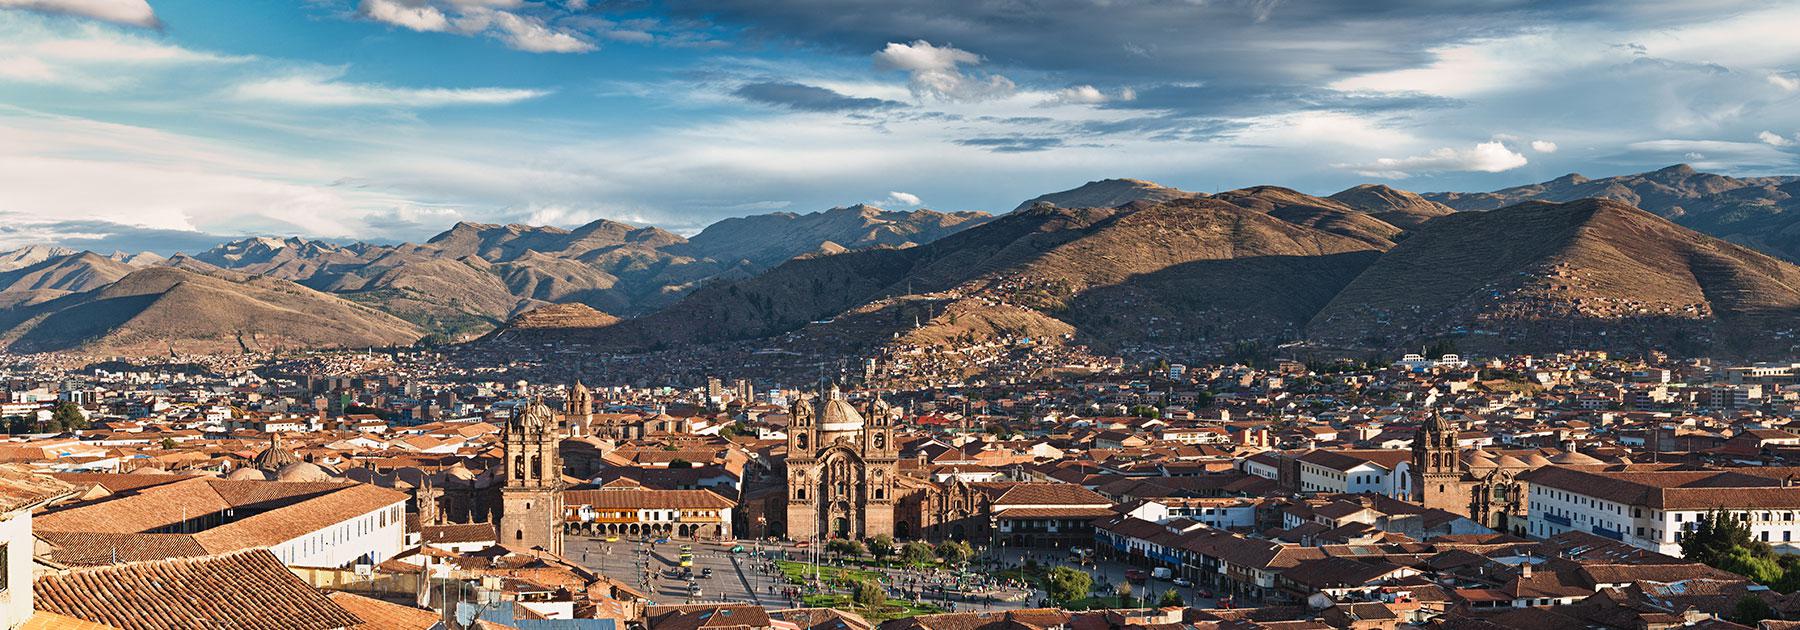 Peru: Lima, Cusco, Machu Picchu Group Tour